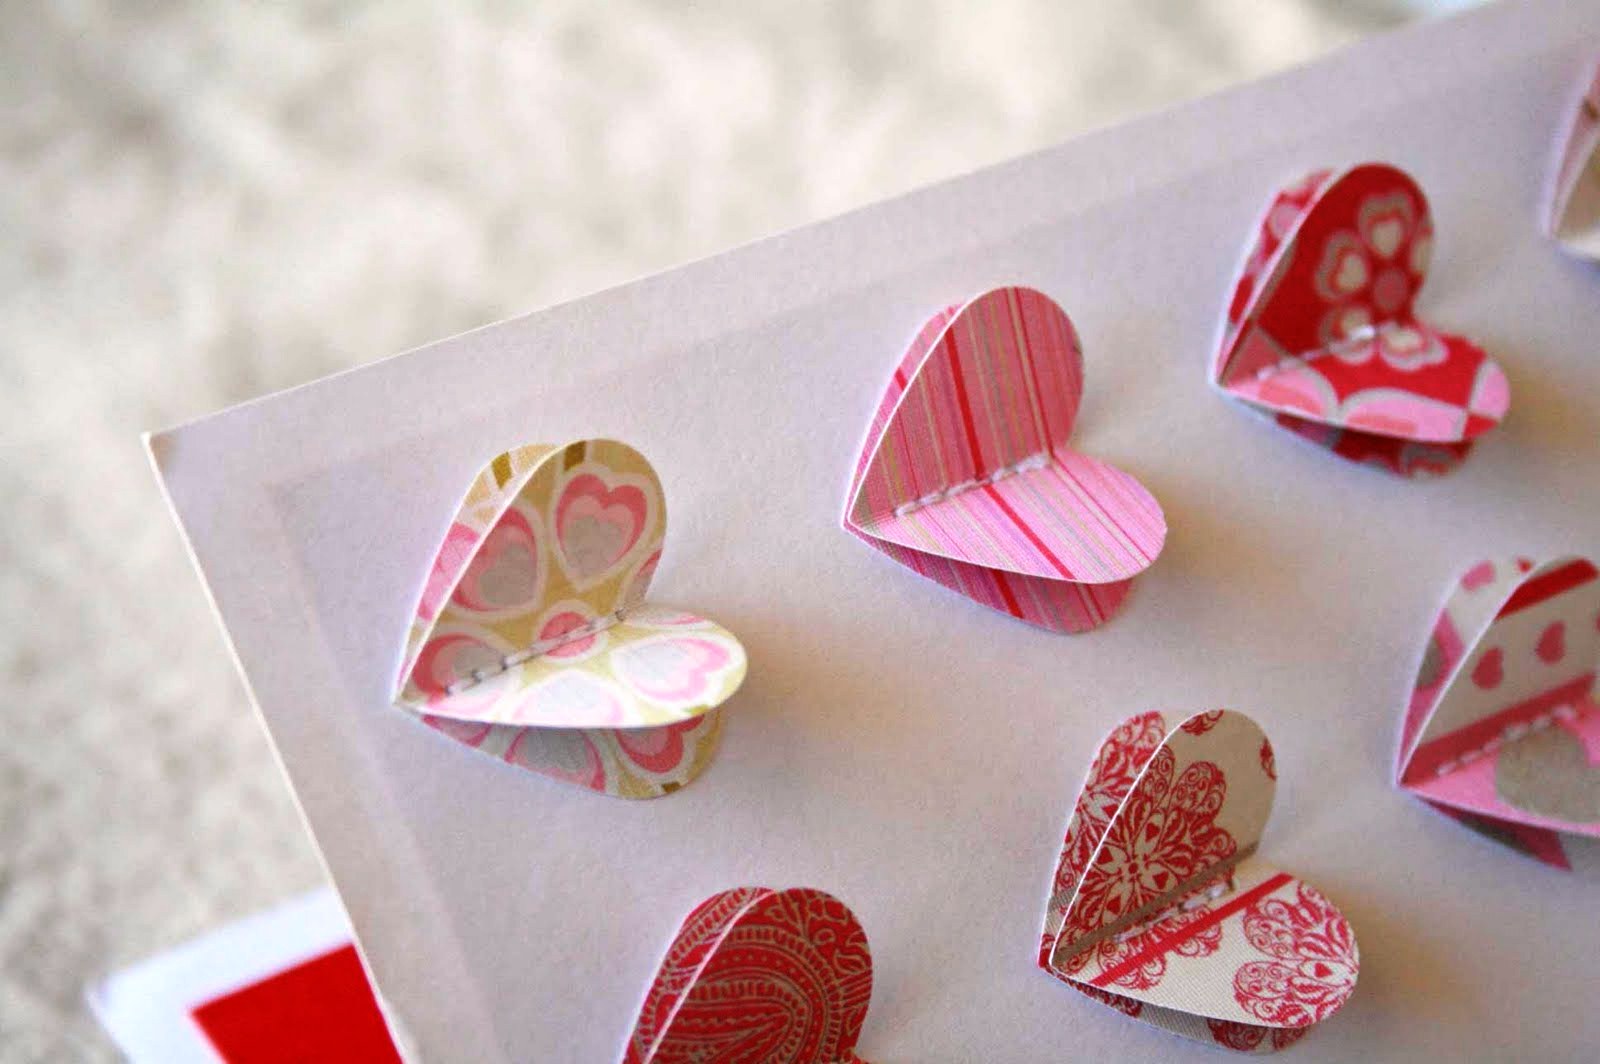 Ви можете вирізати однакові сердечка і закріпити з клеєм або нитками на листівці з щільного картону